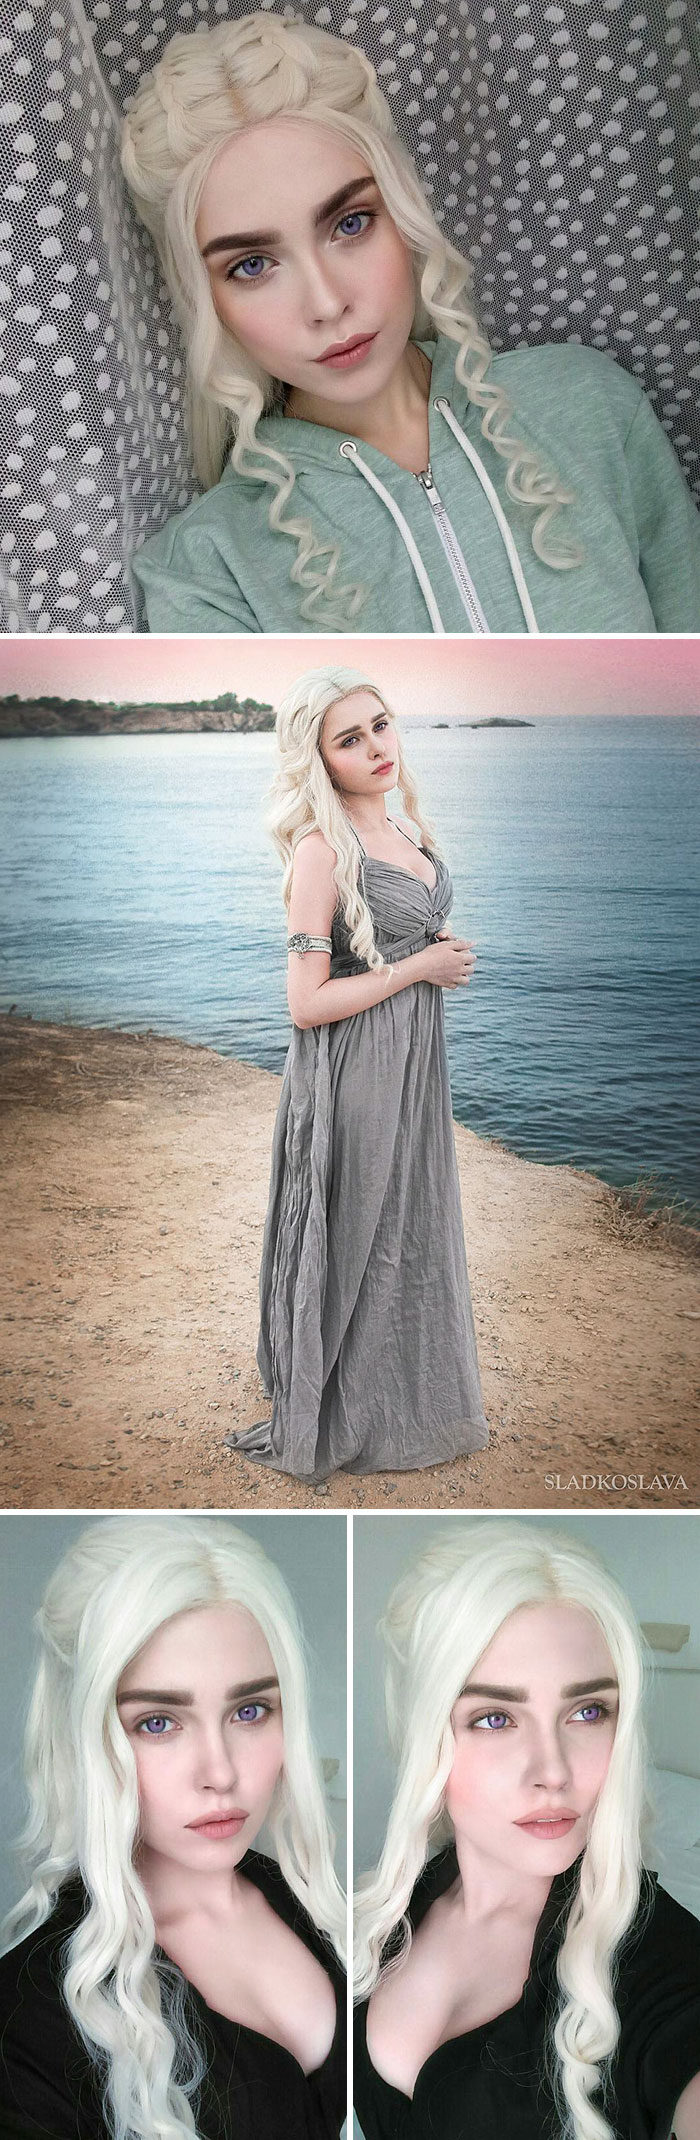 Daenerys Targaryen, Game Of Thrones